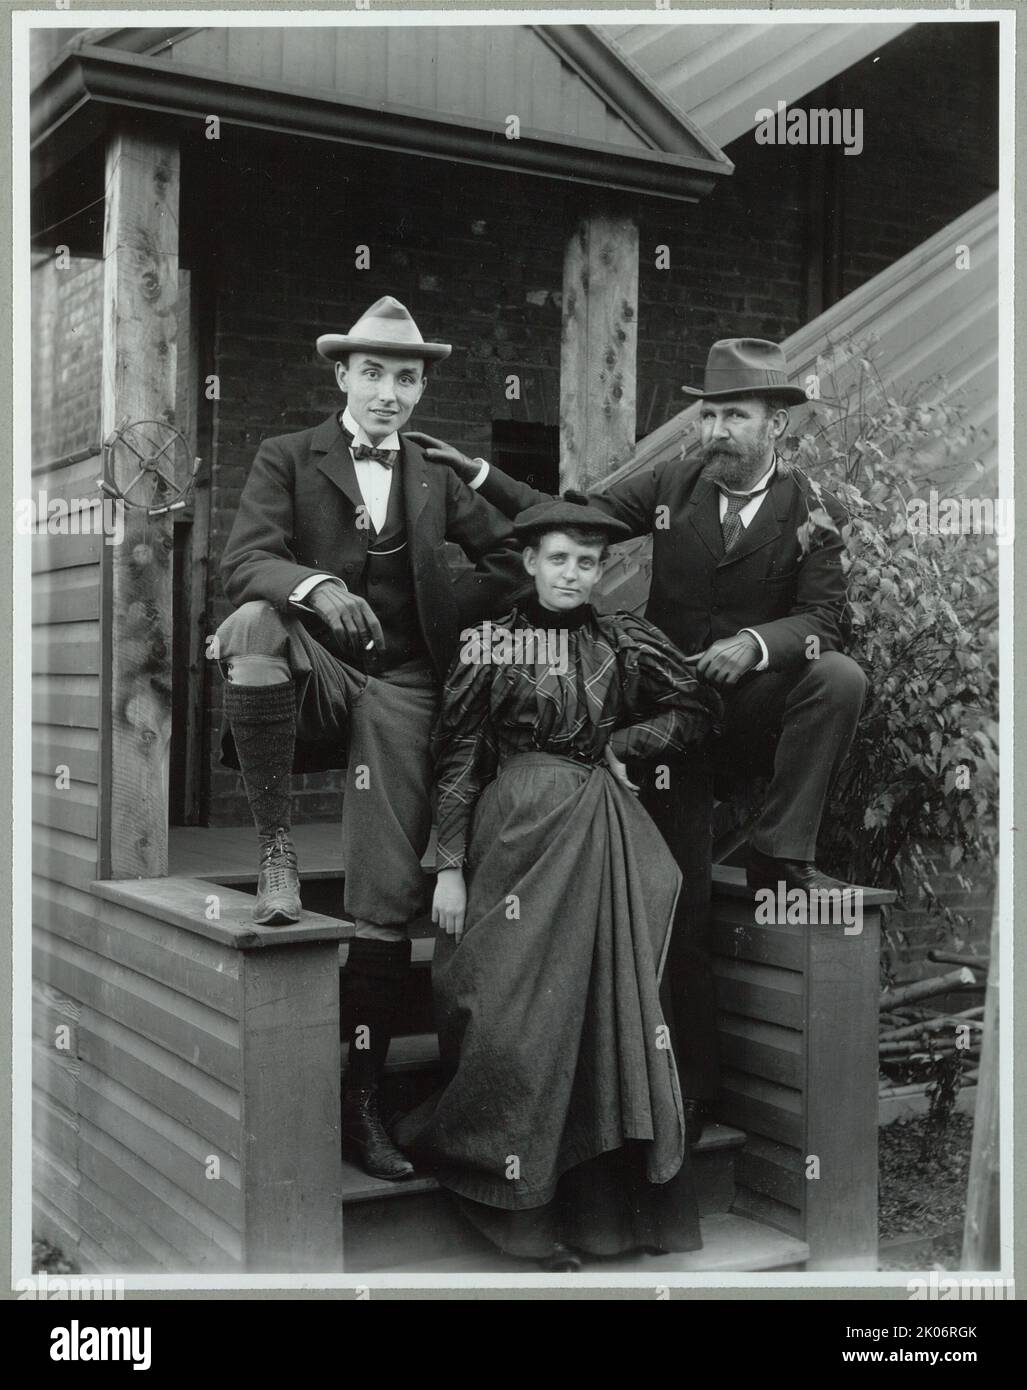 Frances Benjamin Johnston (davanti), con Mills Thompson (a sinistra) e Frank Phister, ritratto completo, posato su gradini fuori dal suo studio (?), tra il 1885 e il 1900, stampato più tardi. [Frances Benjamin Johnston era un fotografo e un fotoreporter. La sua amica Mills Thompson era un'artista, un pittore e un designer]. Foto Stock